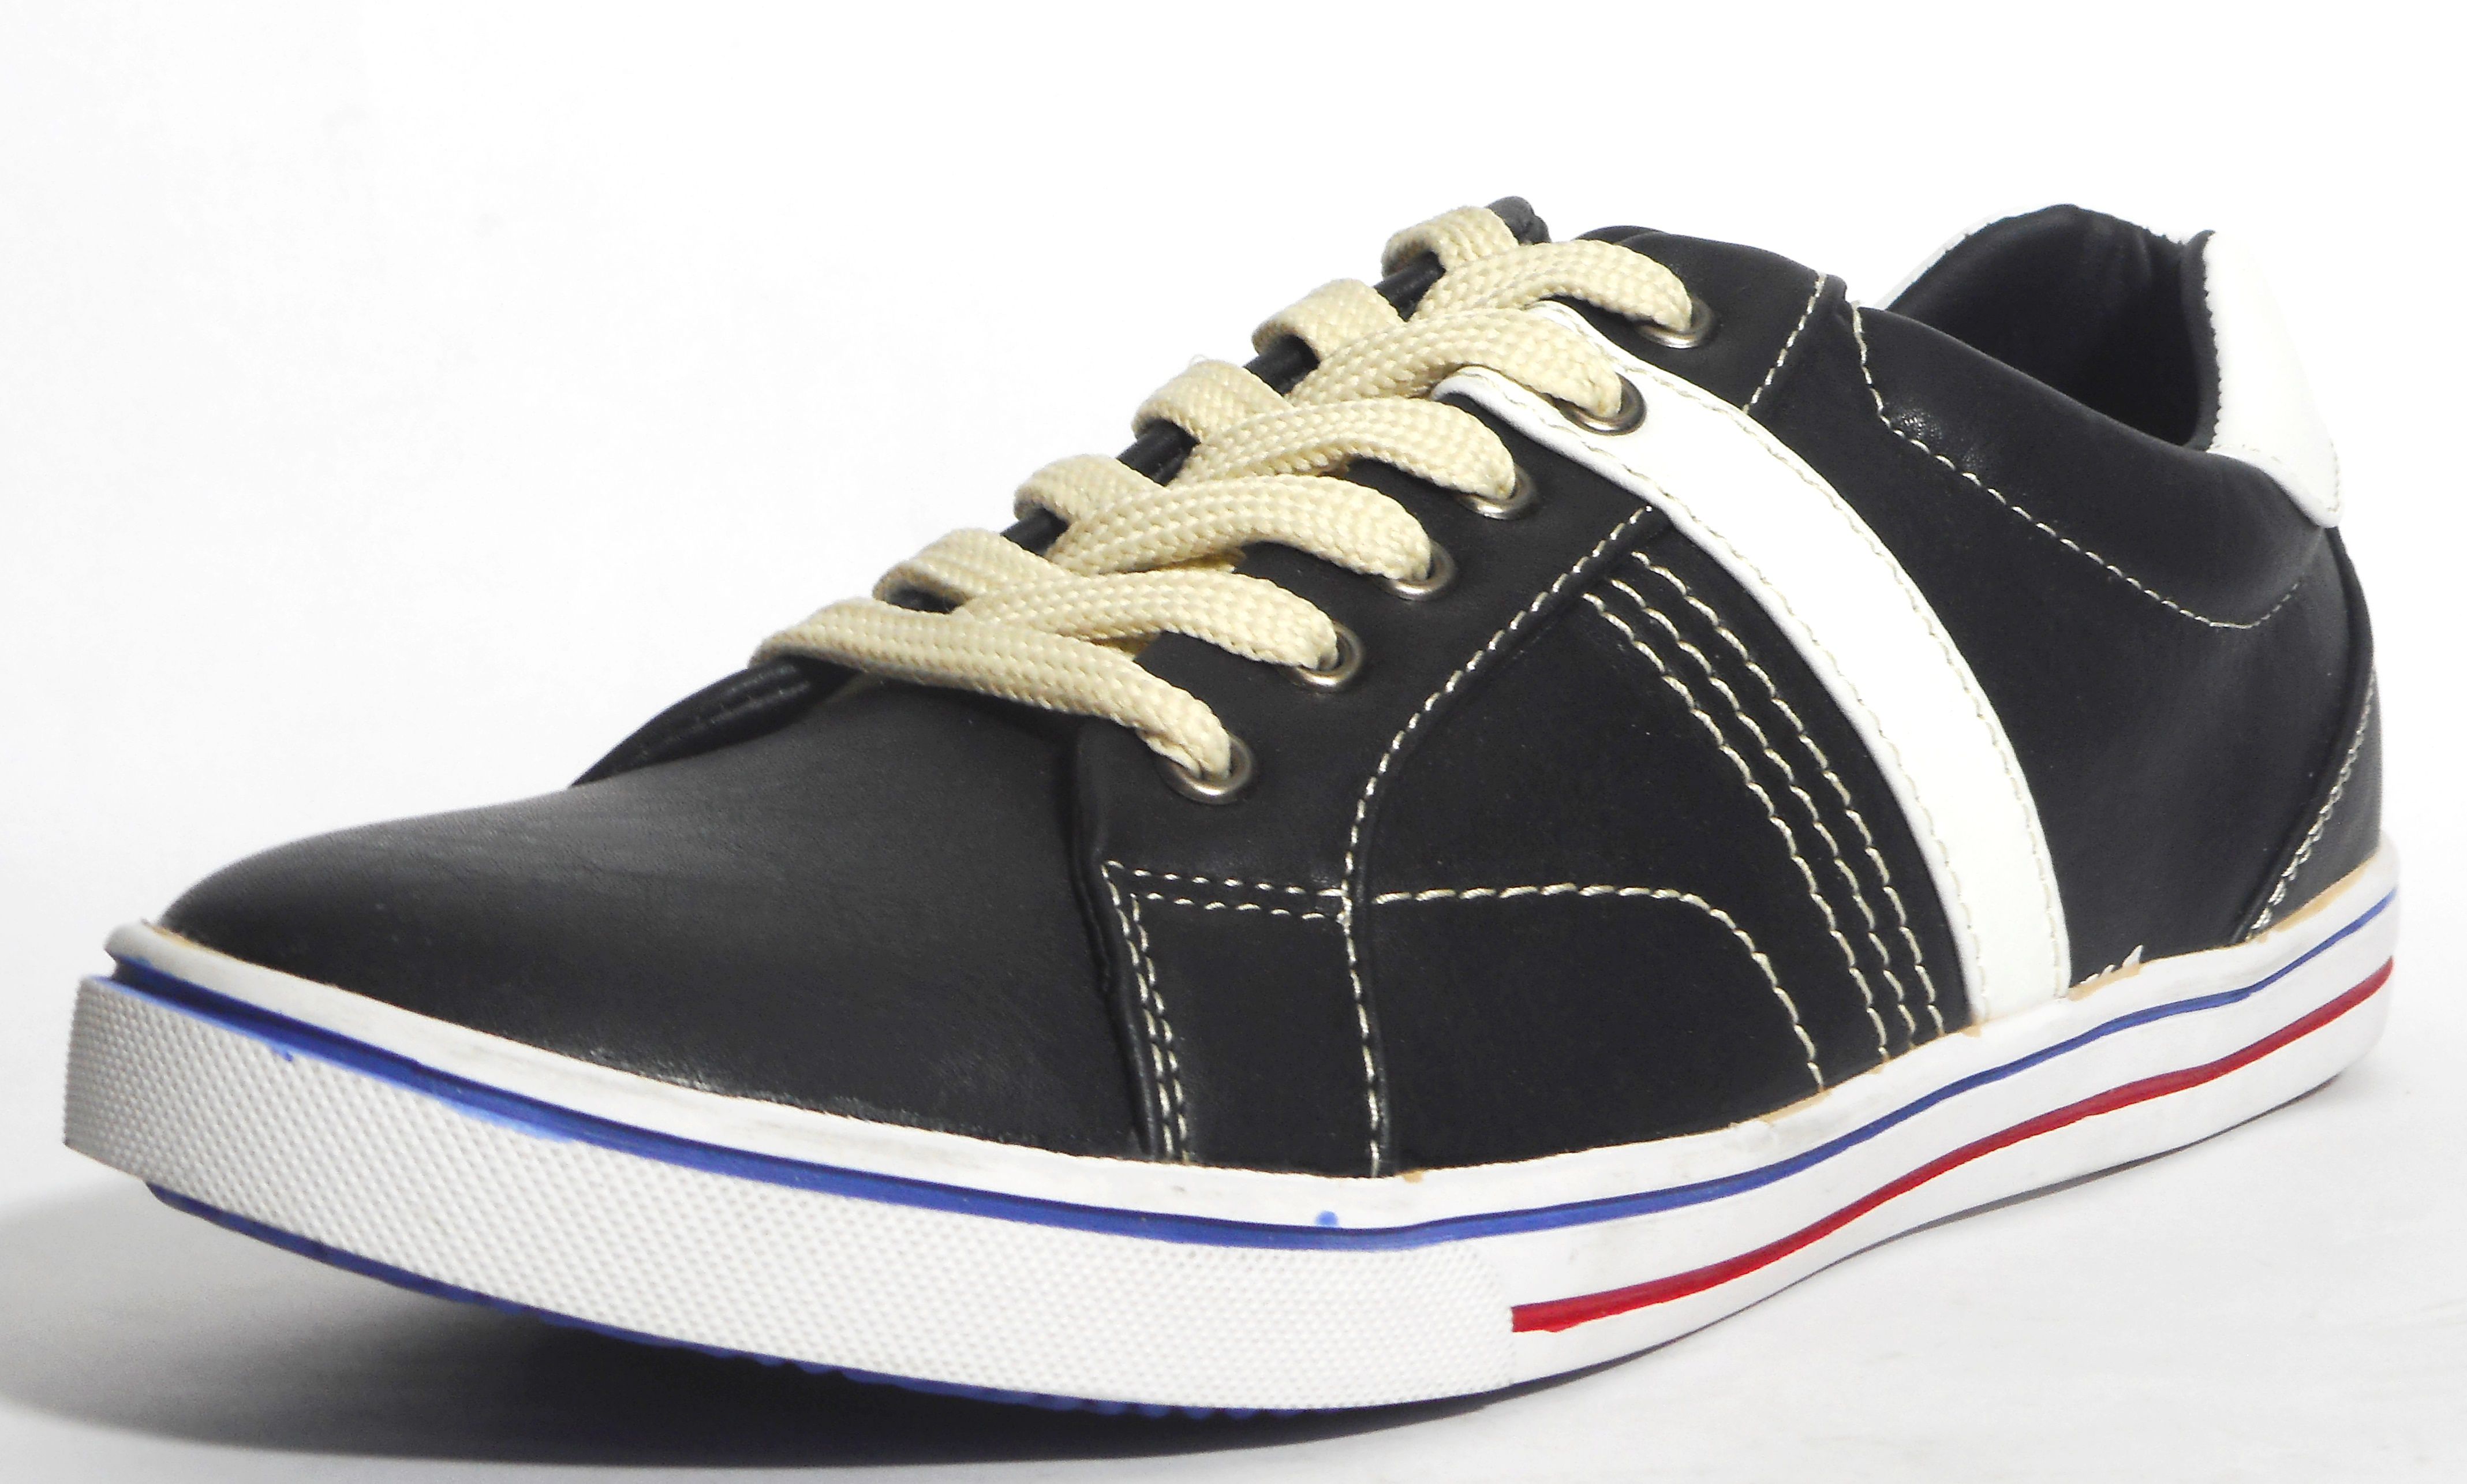 Numer Uno NU-544 Lifestyle Black Casual Shoes - Buy Numer Uno NU-544 ...